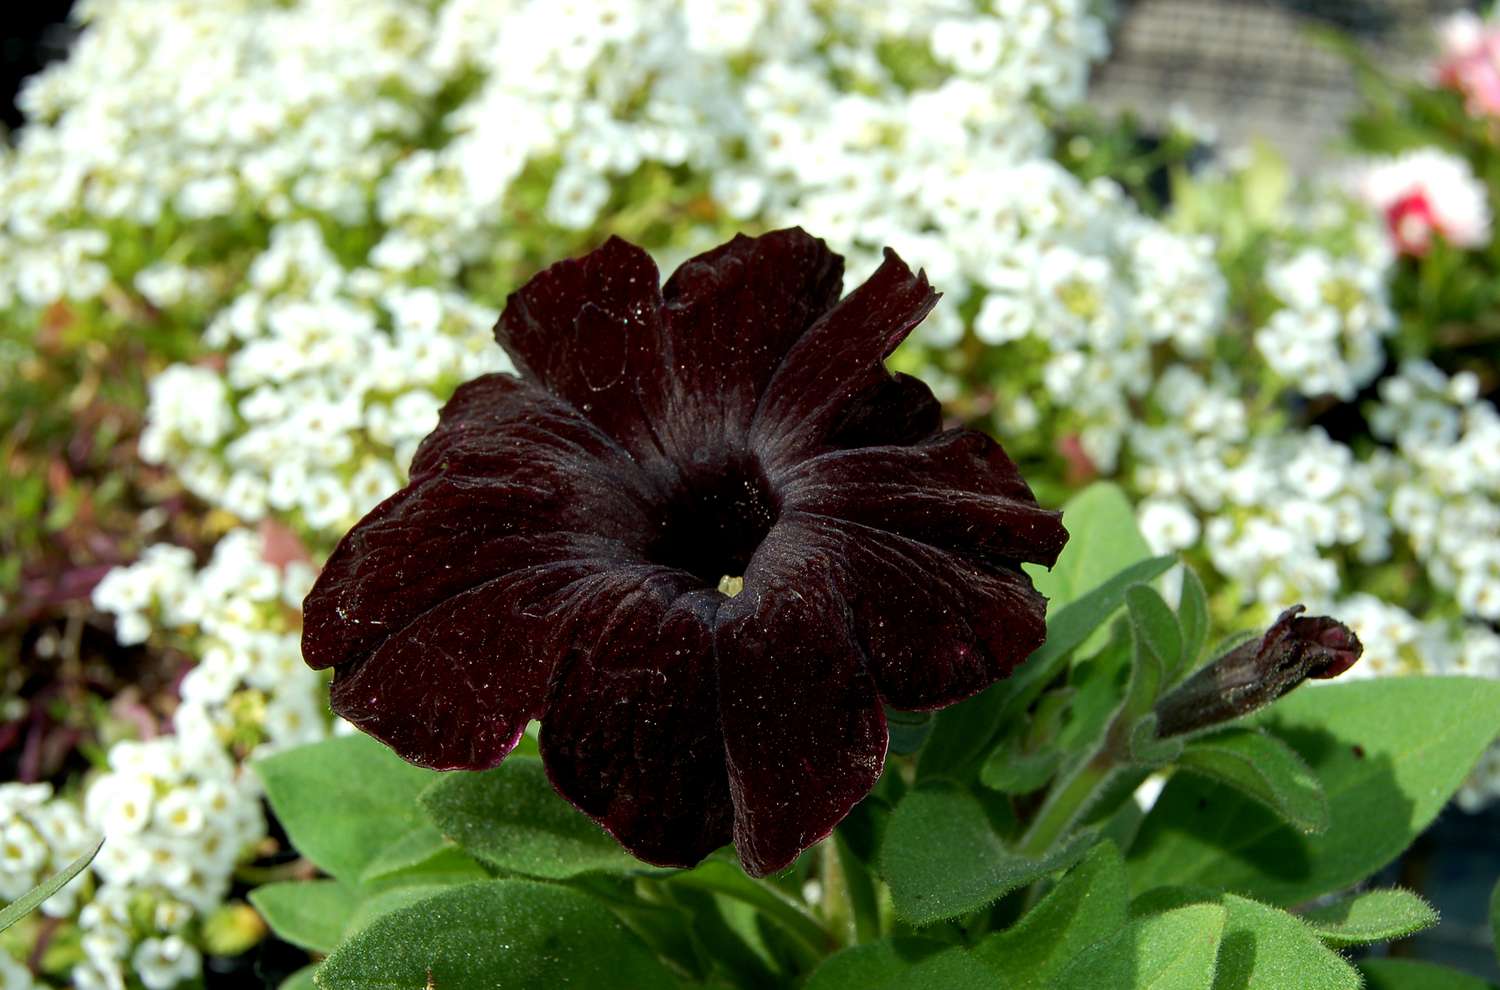 La flor de esta petunia (imagen) es todo lo negra que puede ser una flor.